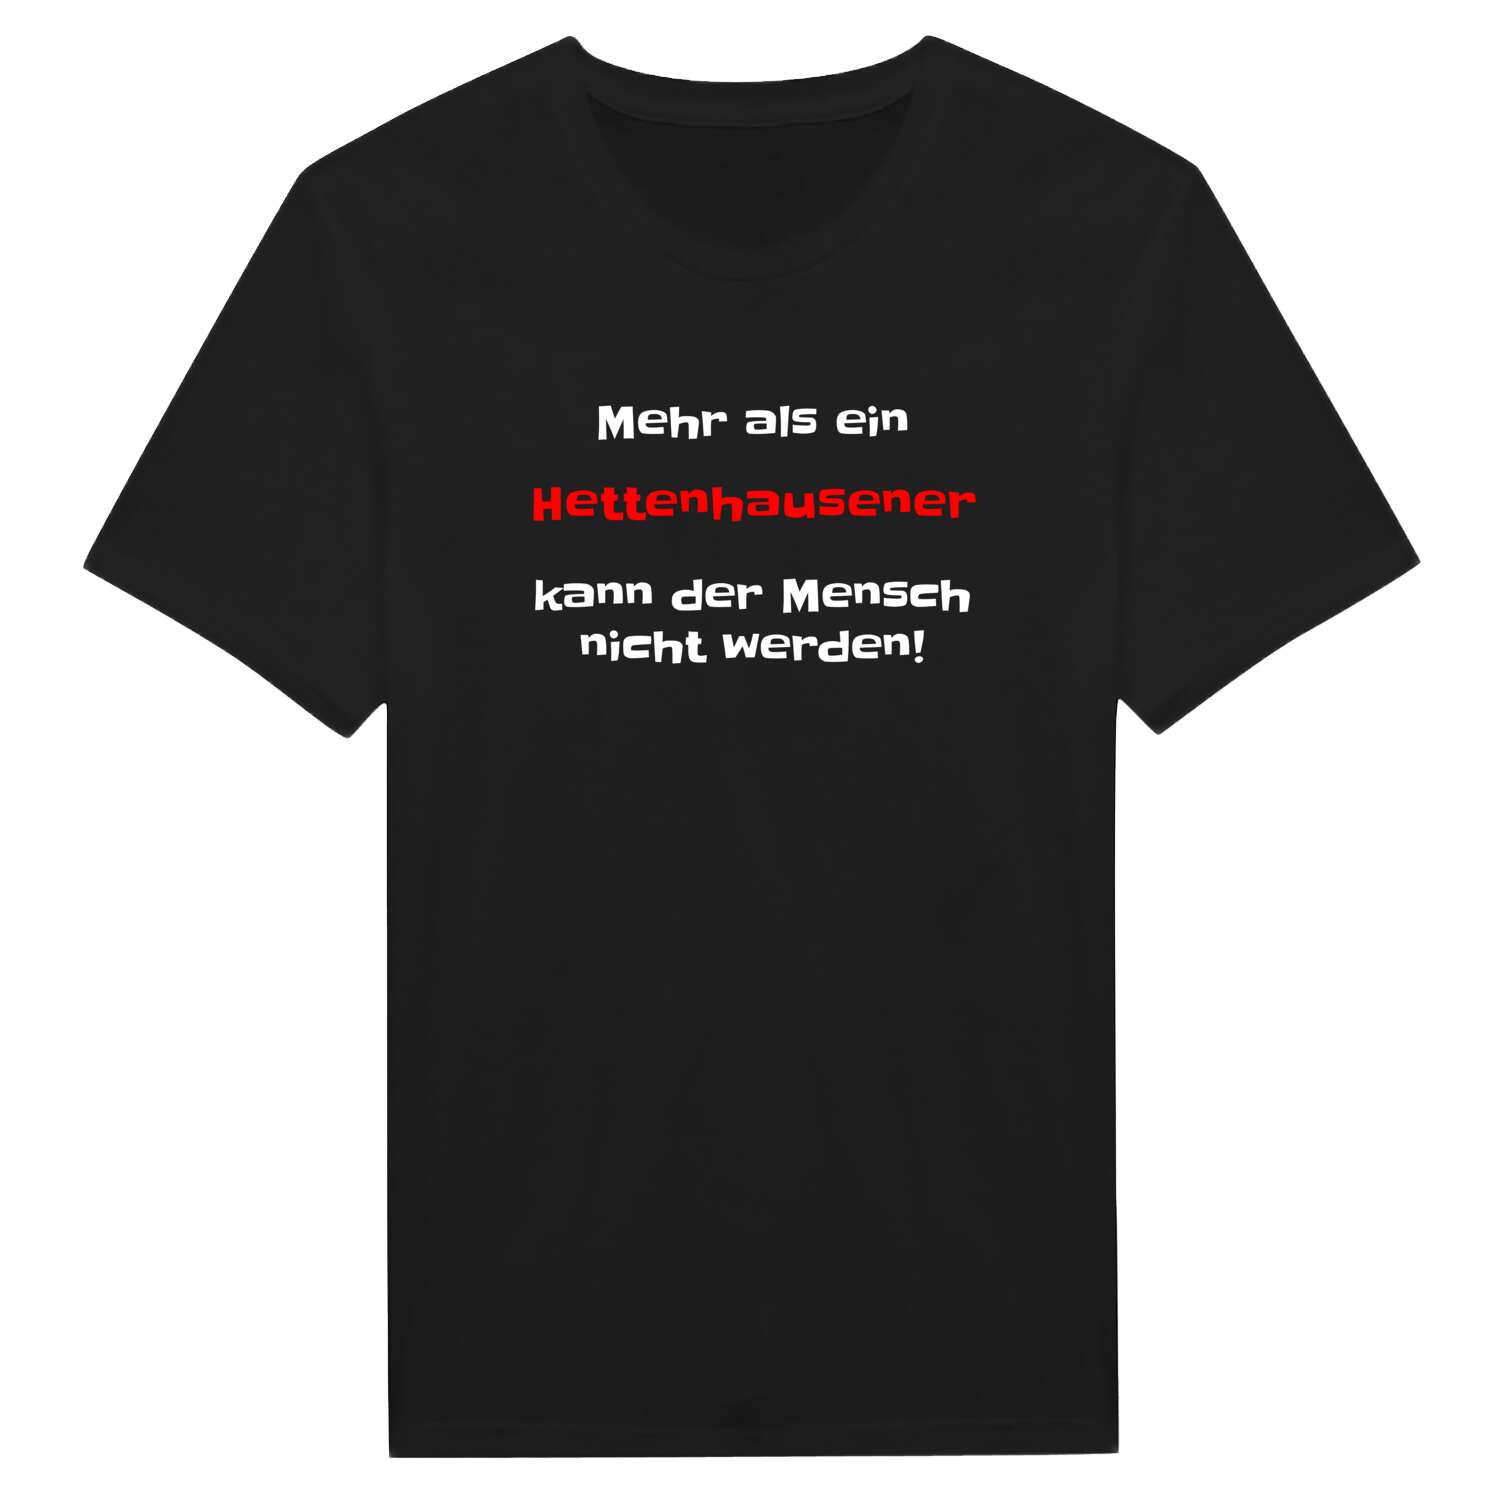 Hettenhausen T-Shirt »Mehr als ein«